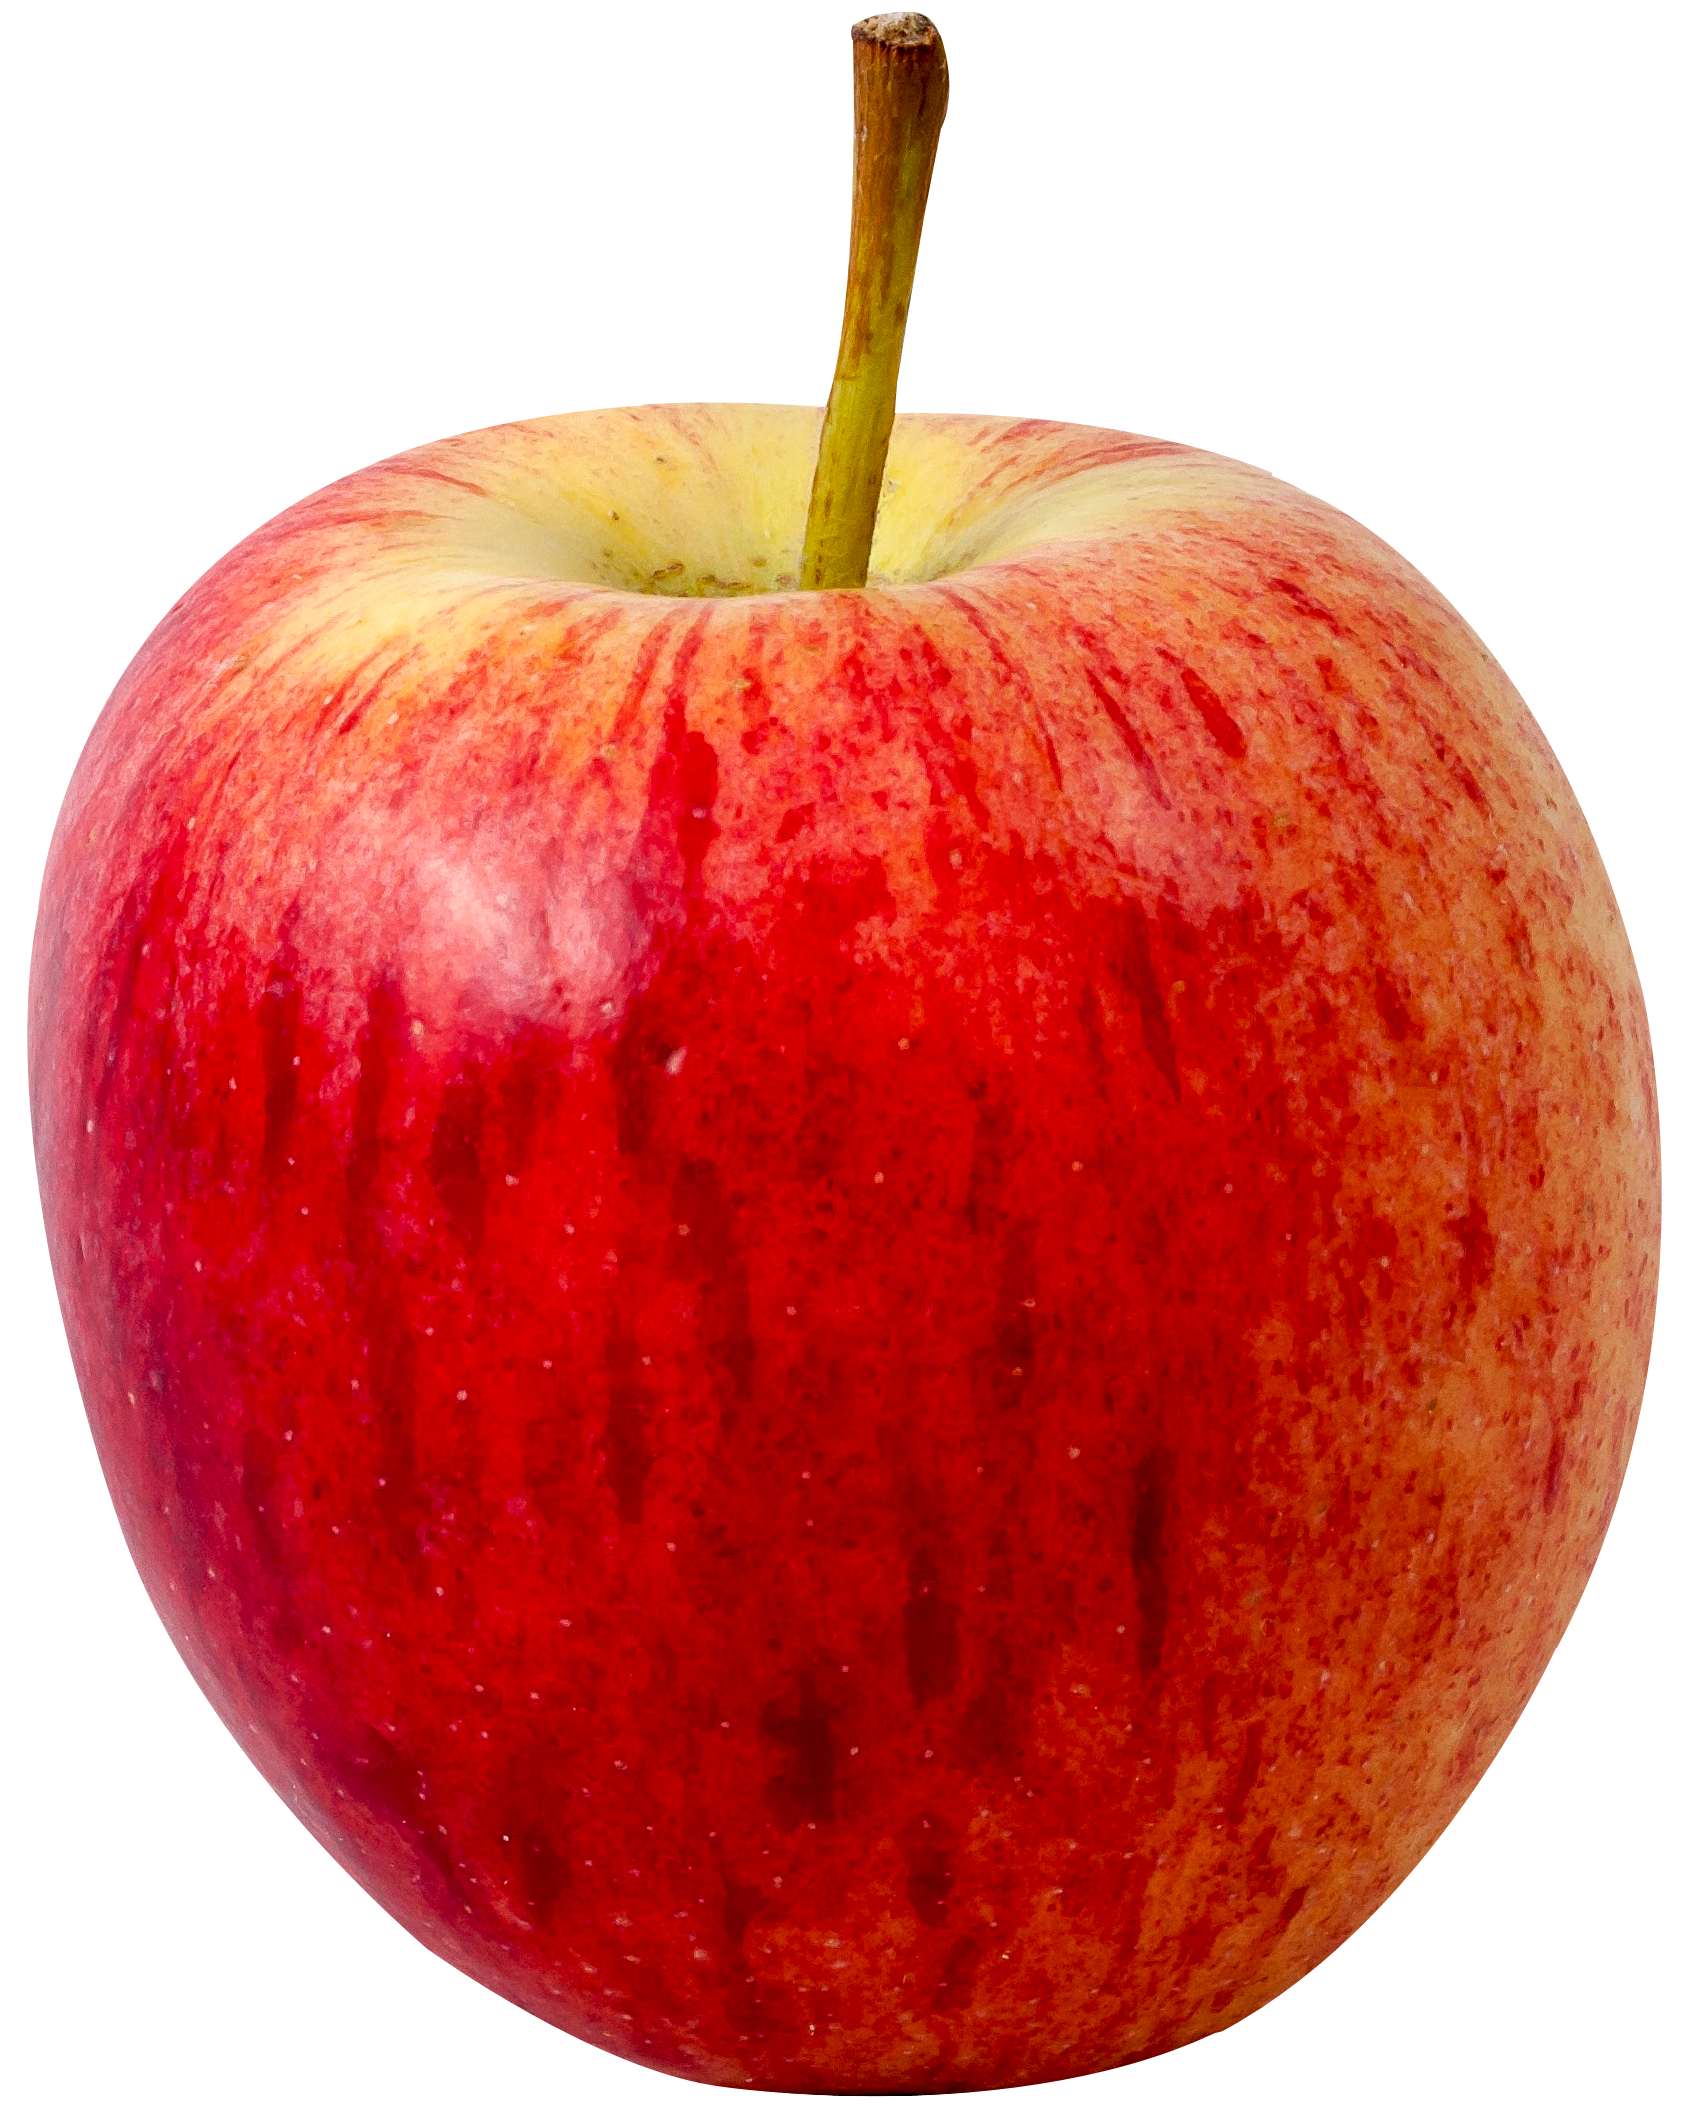 Immagine Trasparente di PNG della frutta di Apple